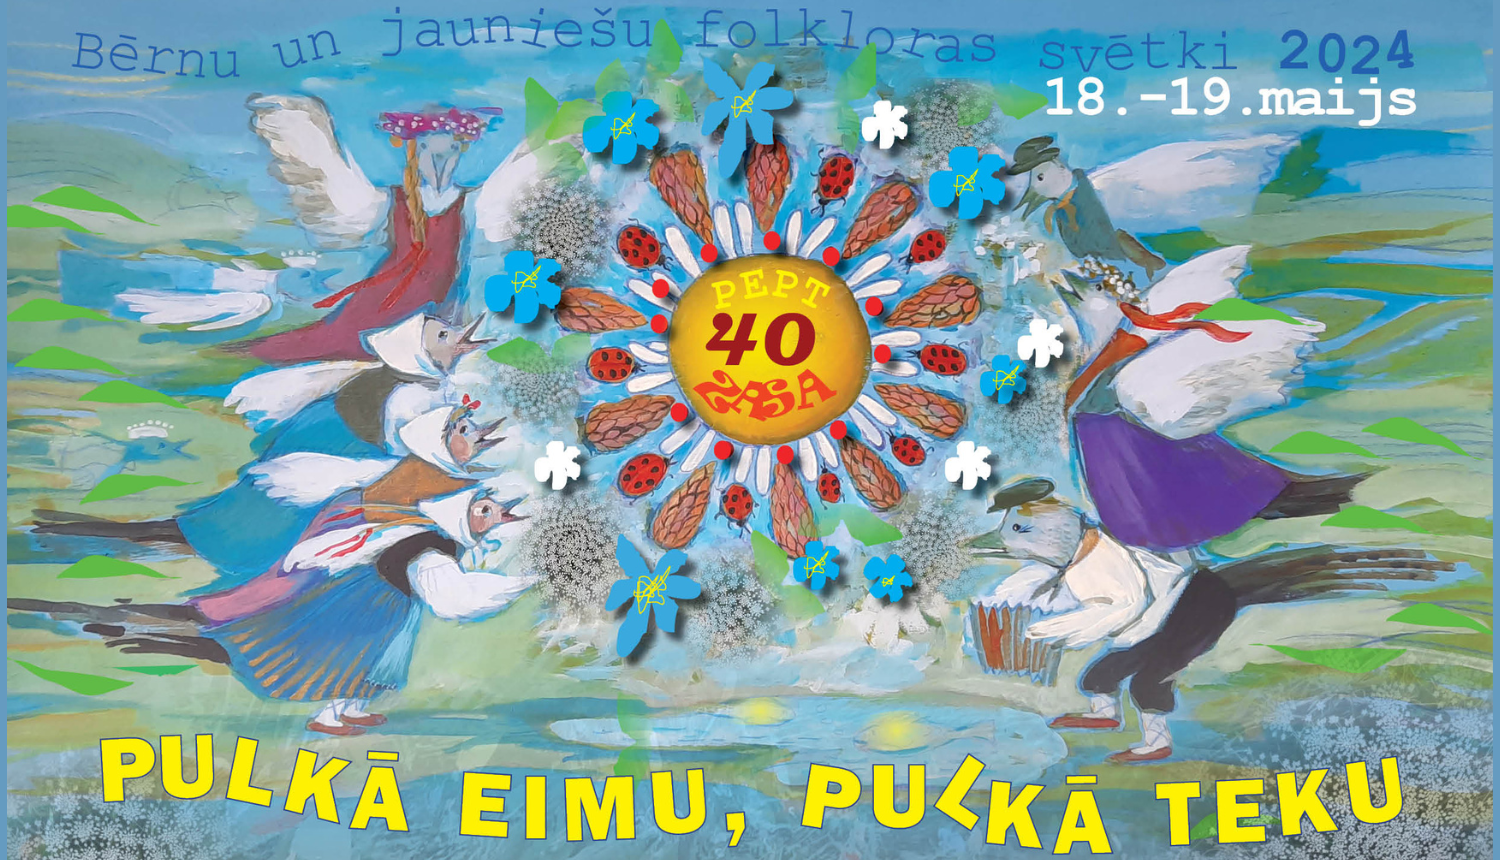 Bērnu un jauniešu folkloras svētki "Pulkā eimu, pulkā teku 2024" 18.-19.maijā